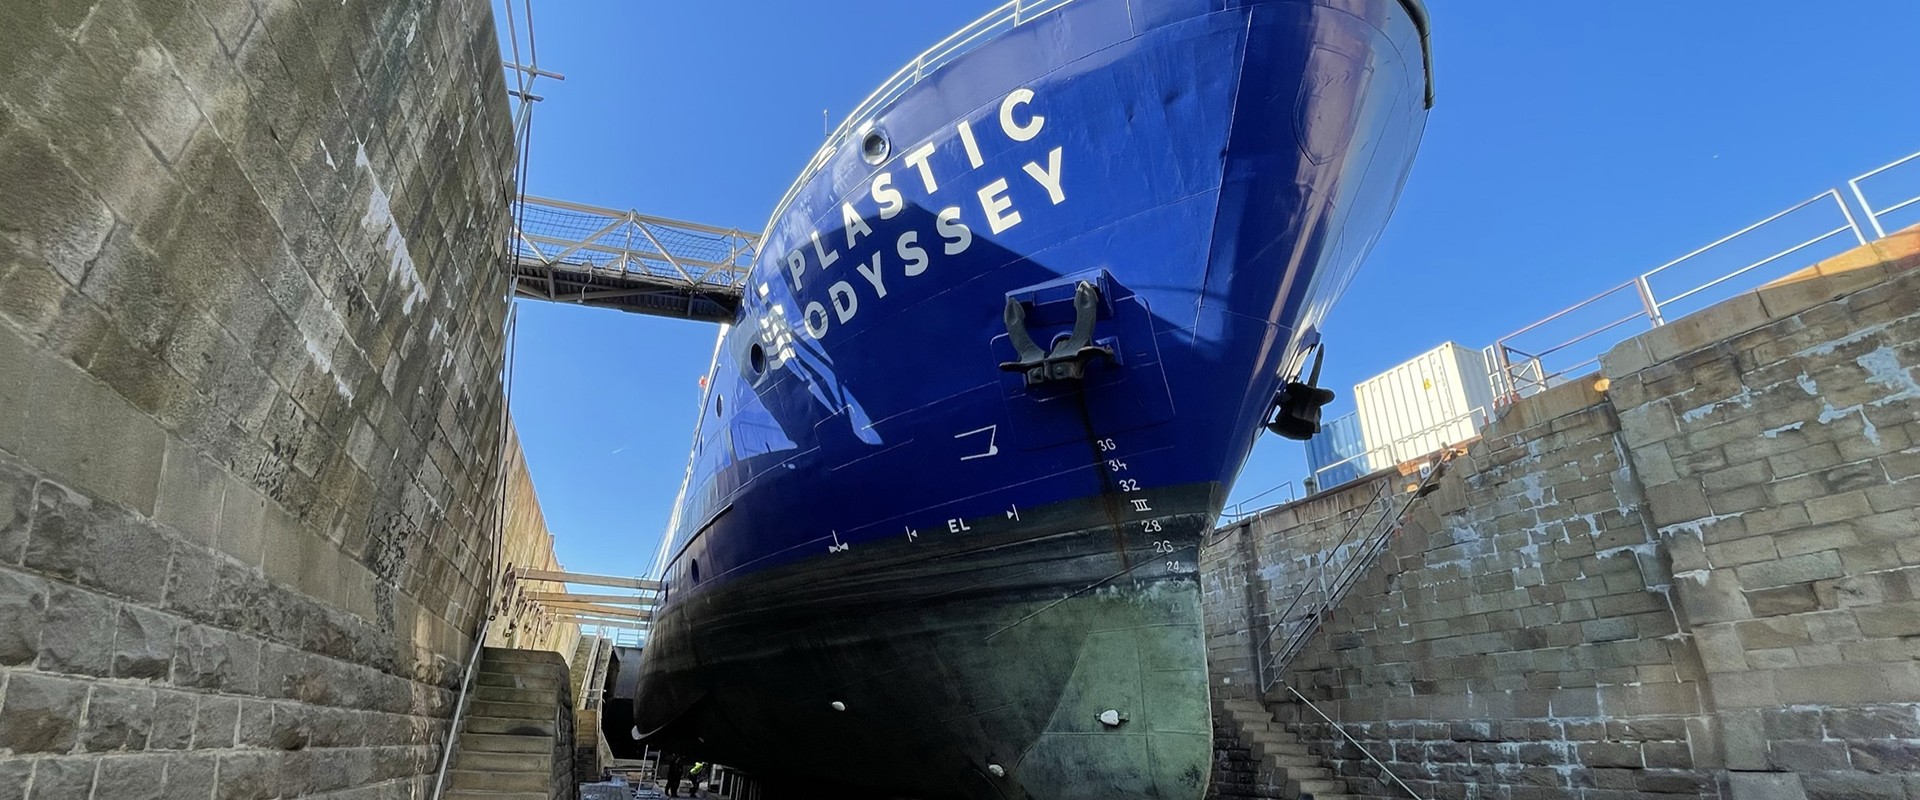 Le Plastic Odyssey en forme de réparation navale